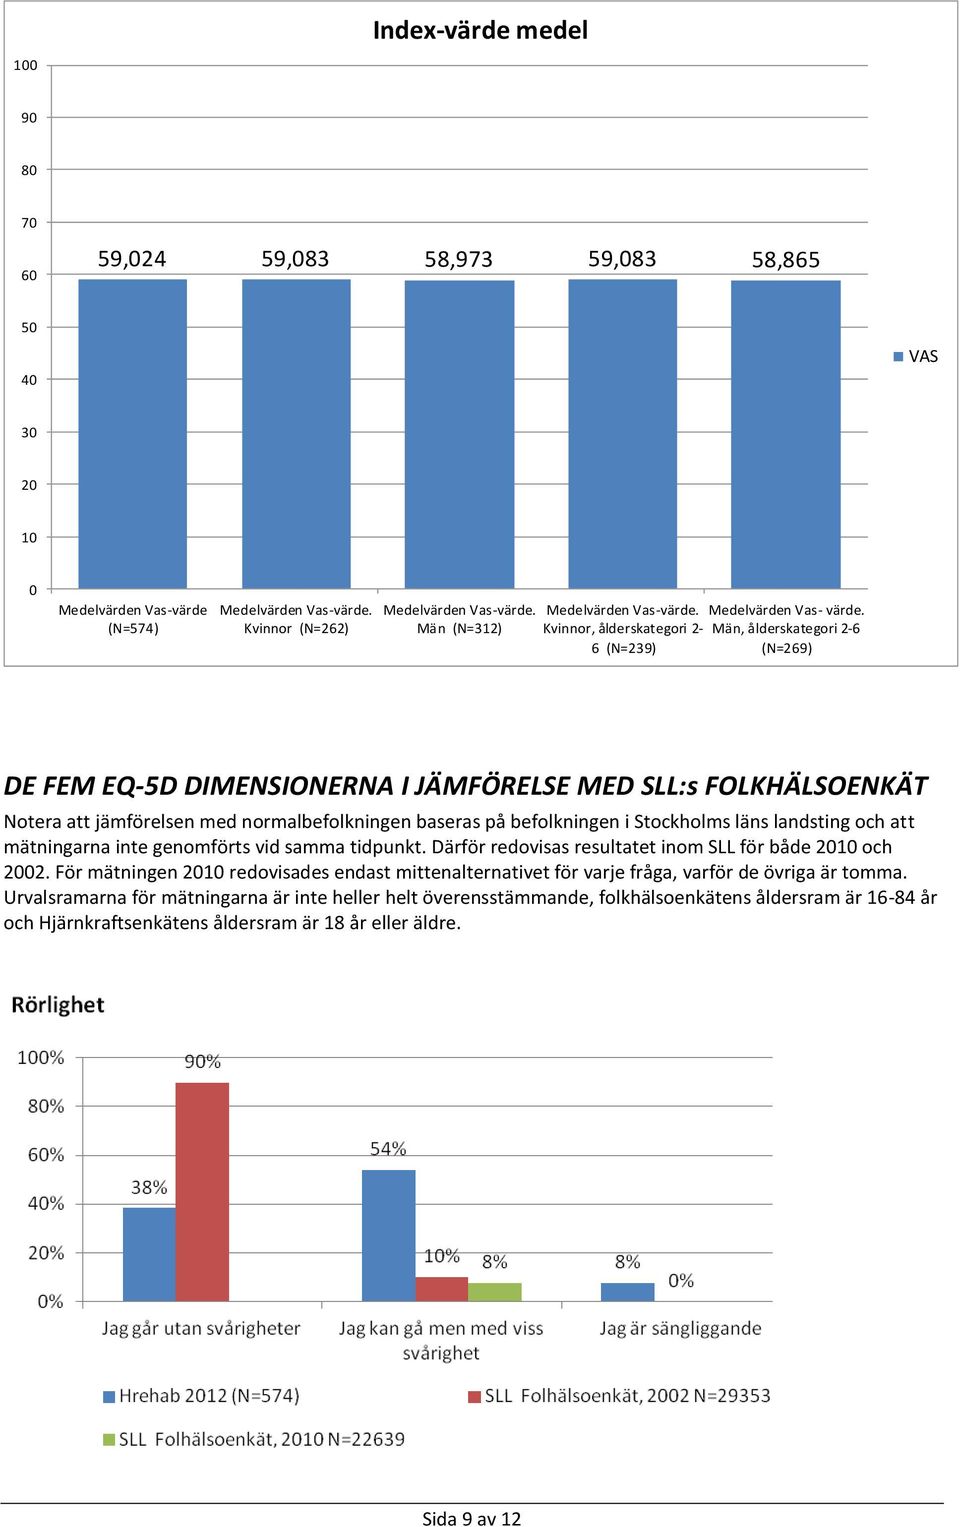 Män, ålderskategori 2-6 (N=269) DE FEM EQ-5D DIMENSIONERNA I JÄMFÖRELSE MED SLL:s FOLKHÄLSOENKÄT Notera att jämförelsen med normalbefolkningen baseras på befolkningen i Stockholms läns landsting och